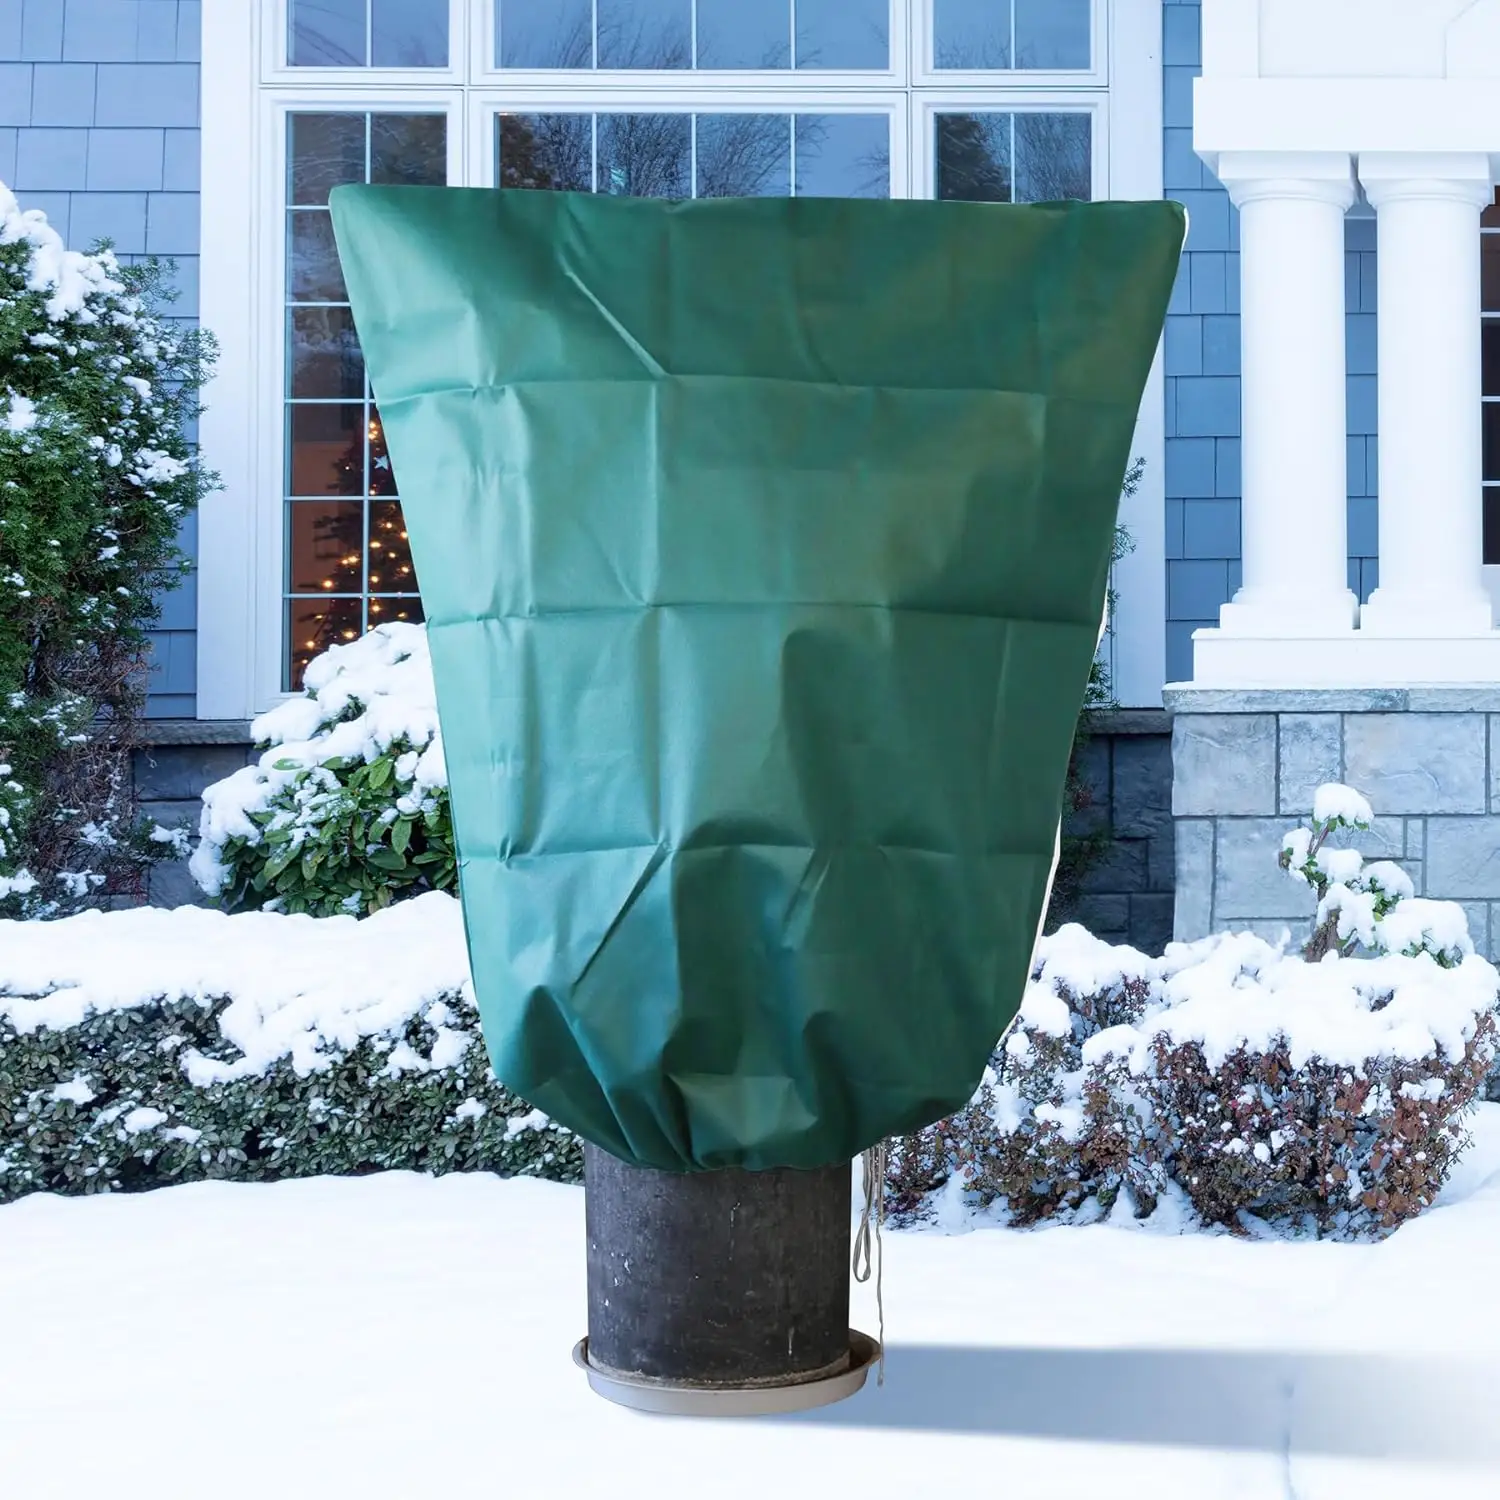 Cubiertas para plantas Protección contra congelamiento Invierno: 3,5 oz 3x4 Ft Cubiertas para árboles verdes Bolsas para mantas congeladas Protector de plantas al aire libre para jardín